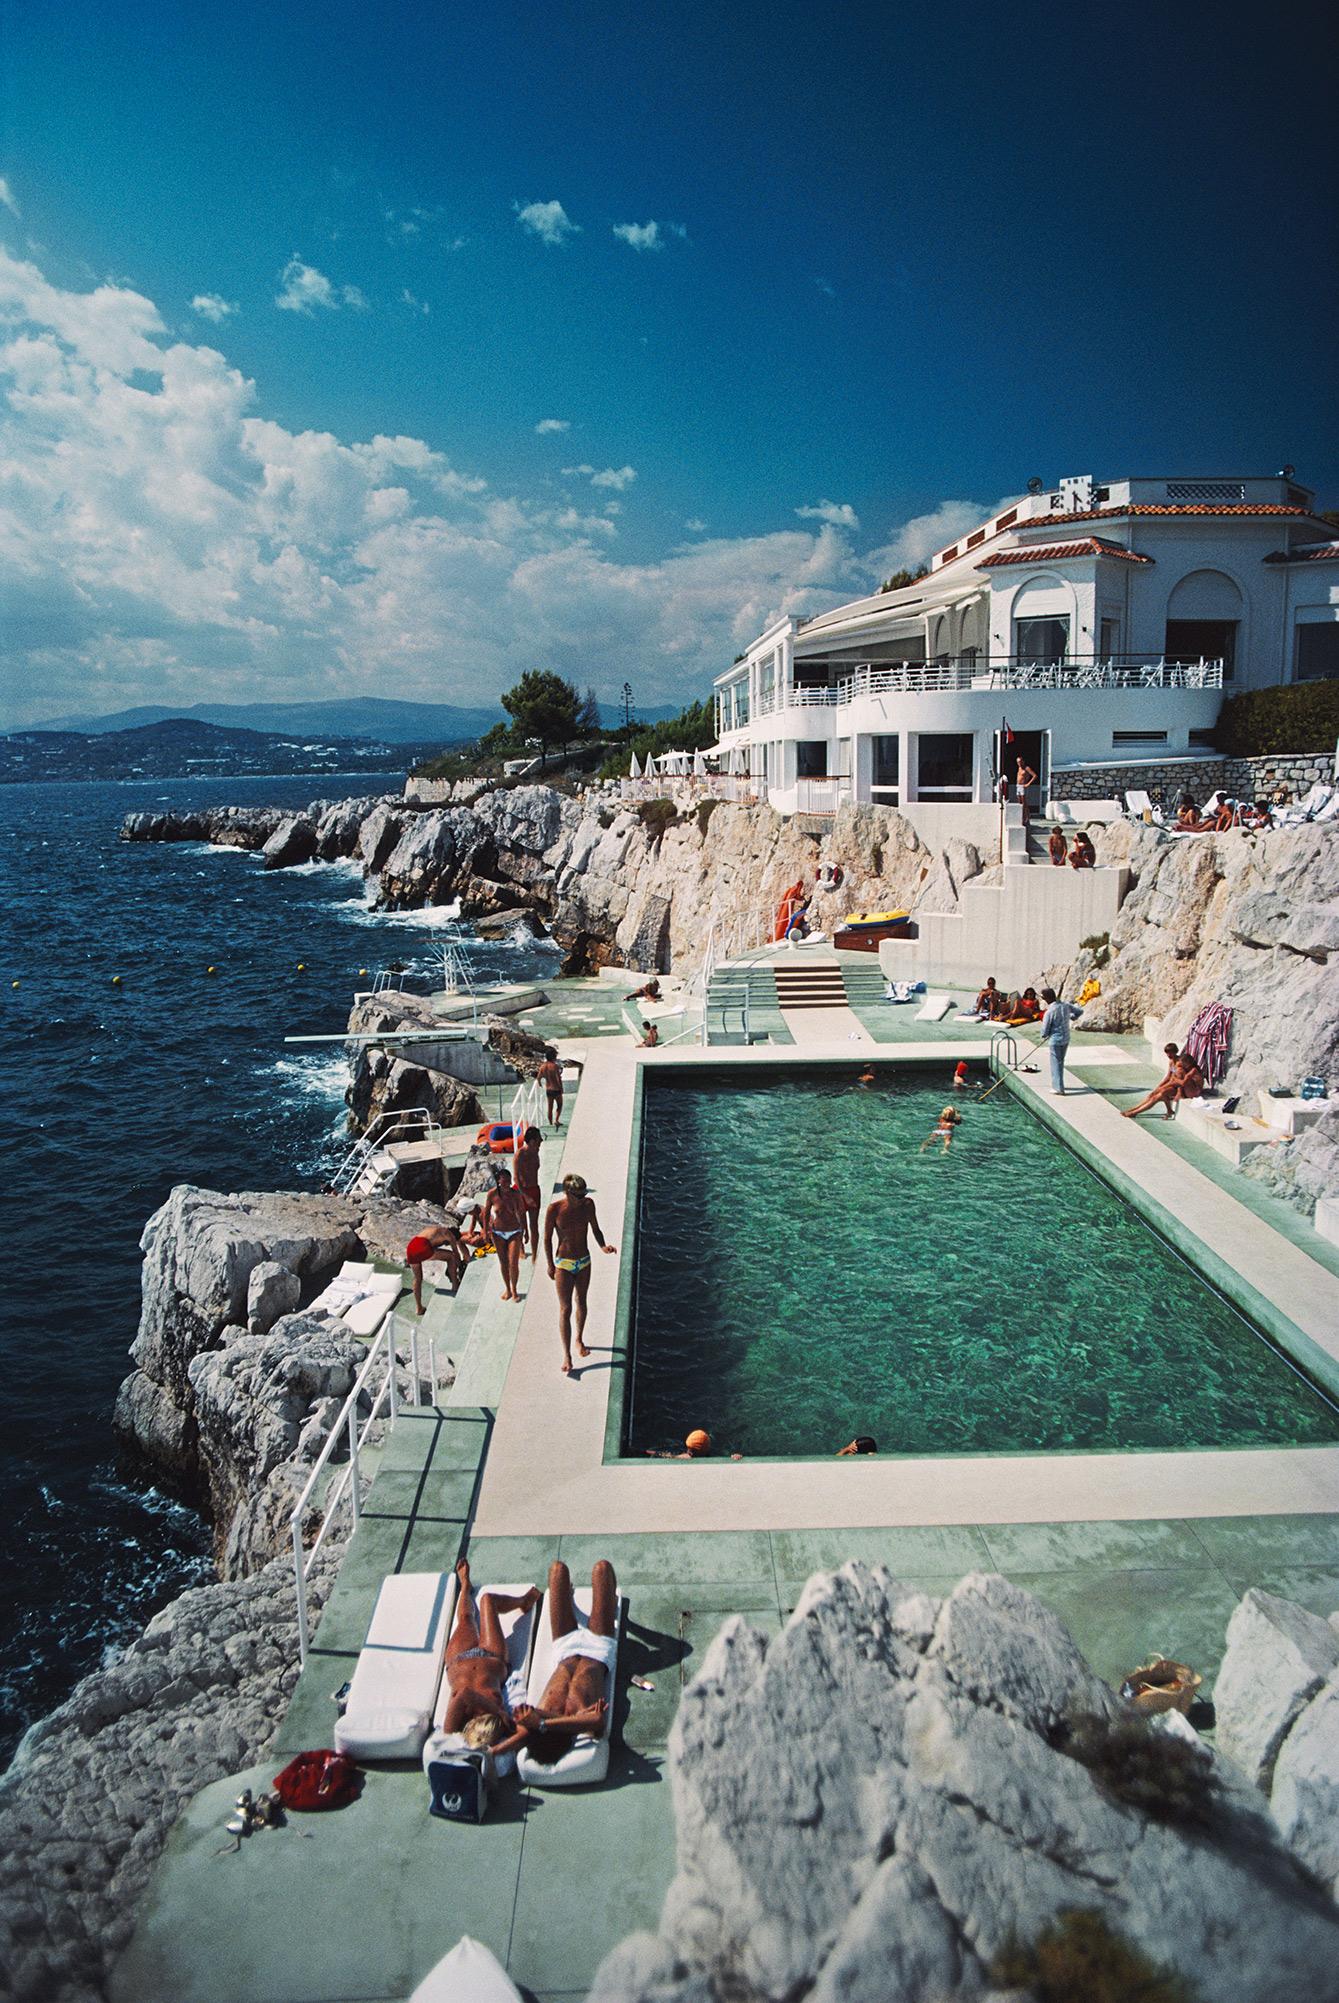 Hôtel du Cap Eden-Roc Pool Estate Edition Photograph: Glamorous Poolside Antibes